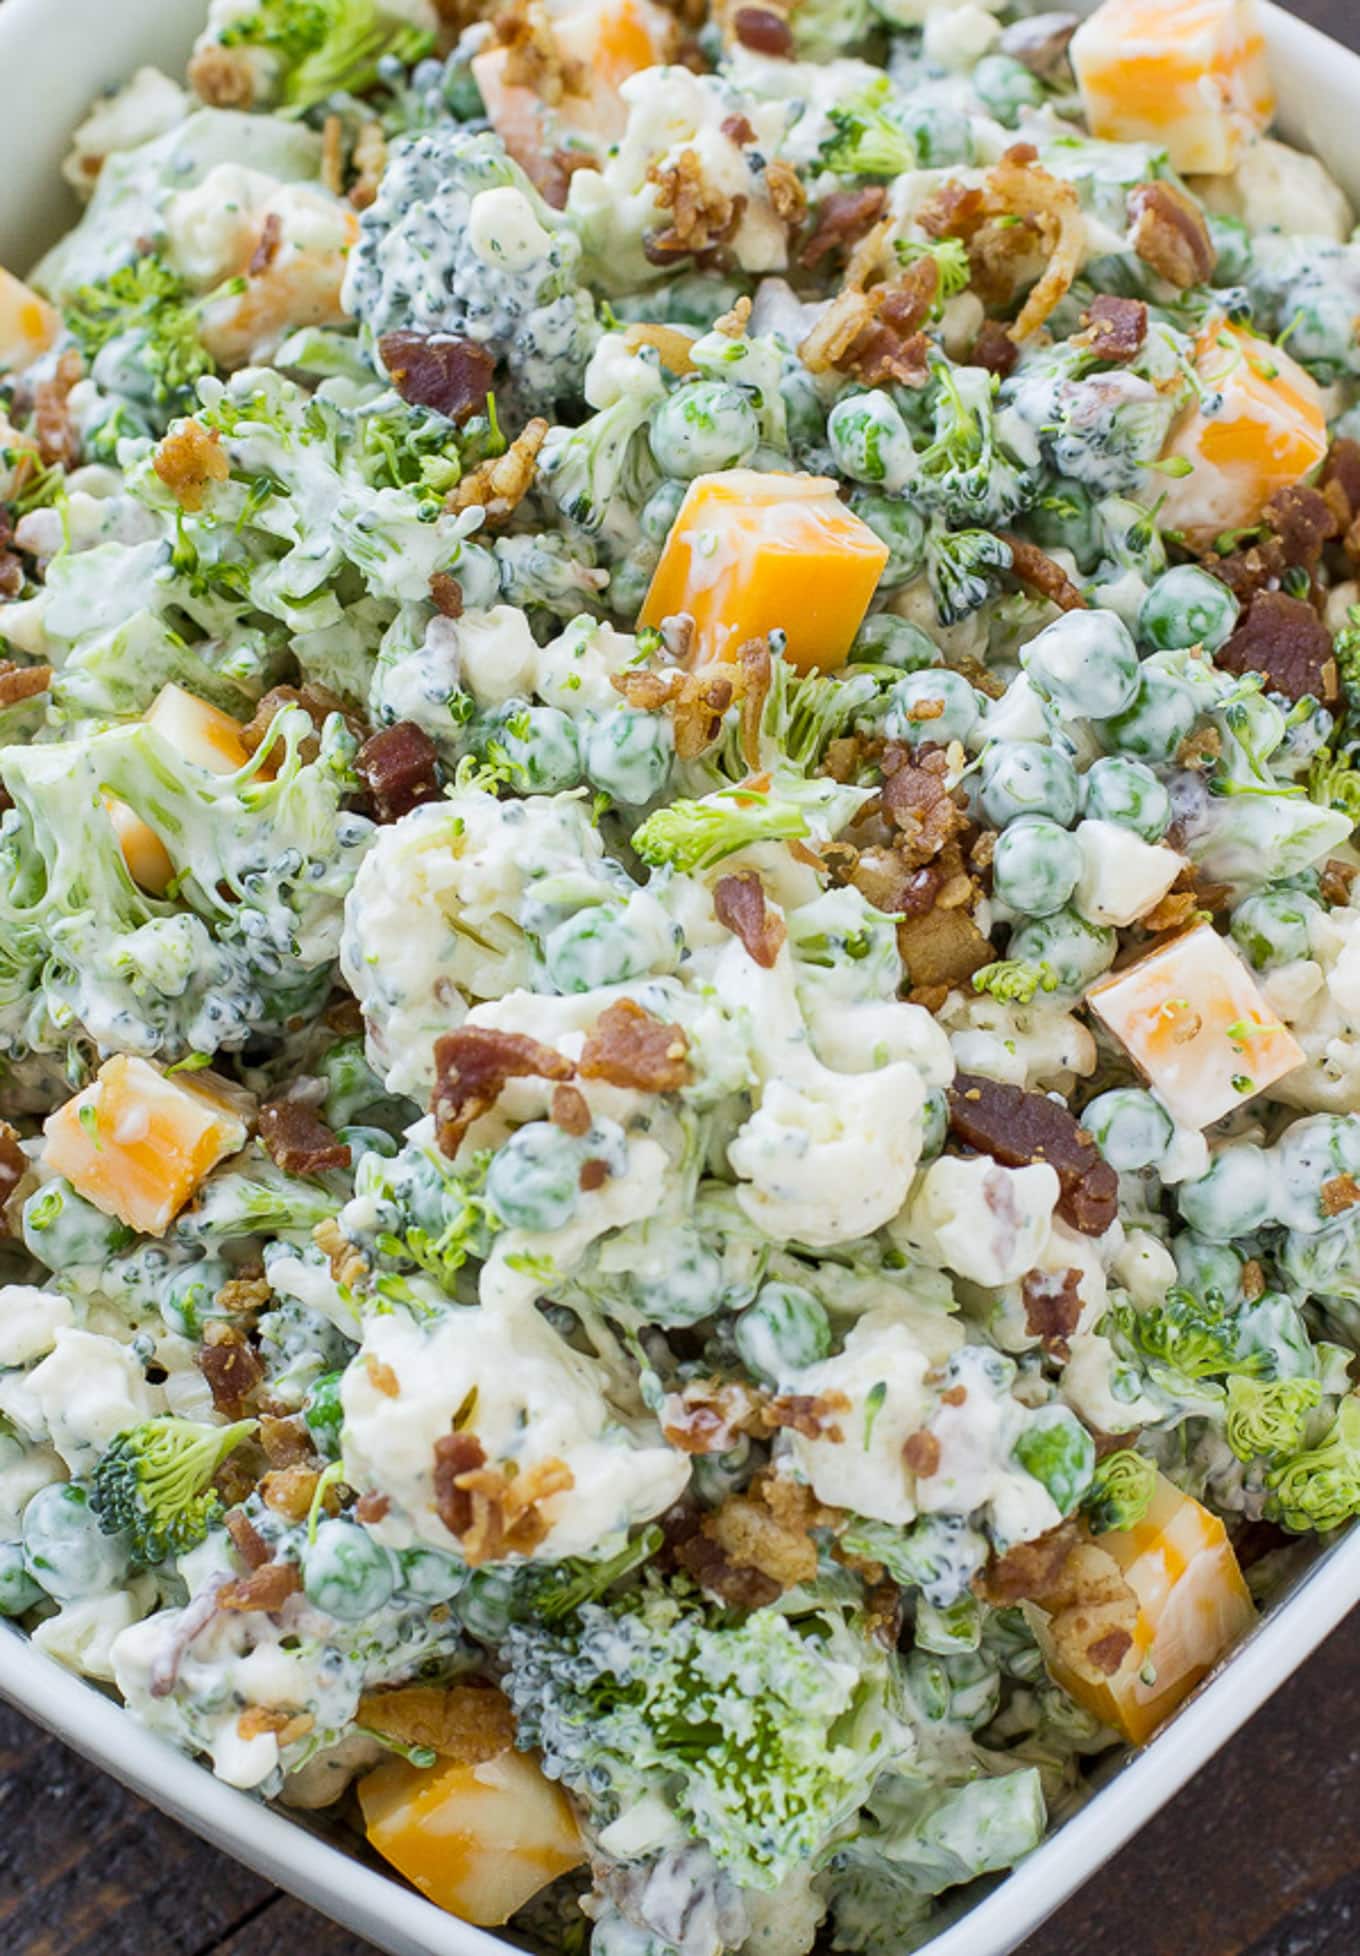 Tasty broccoli salad in a bowl.